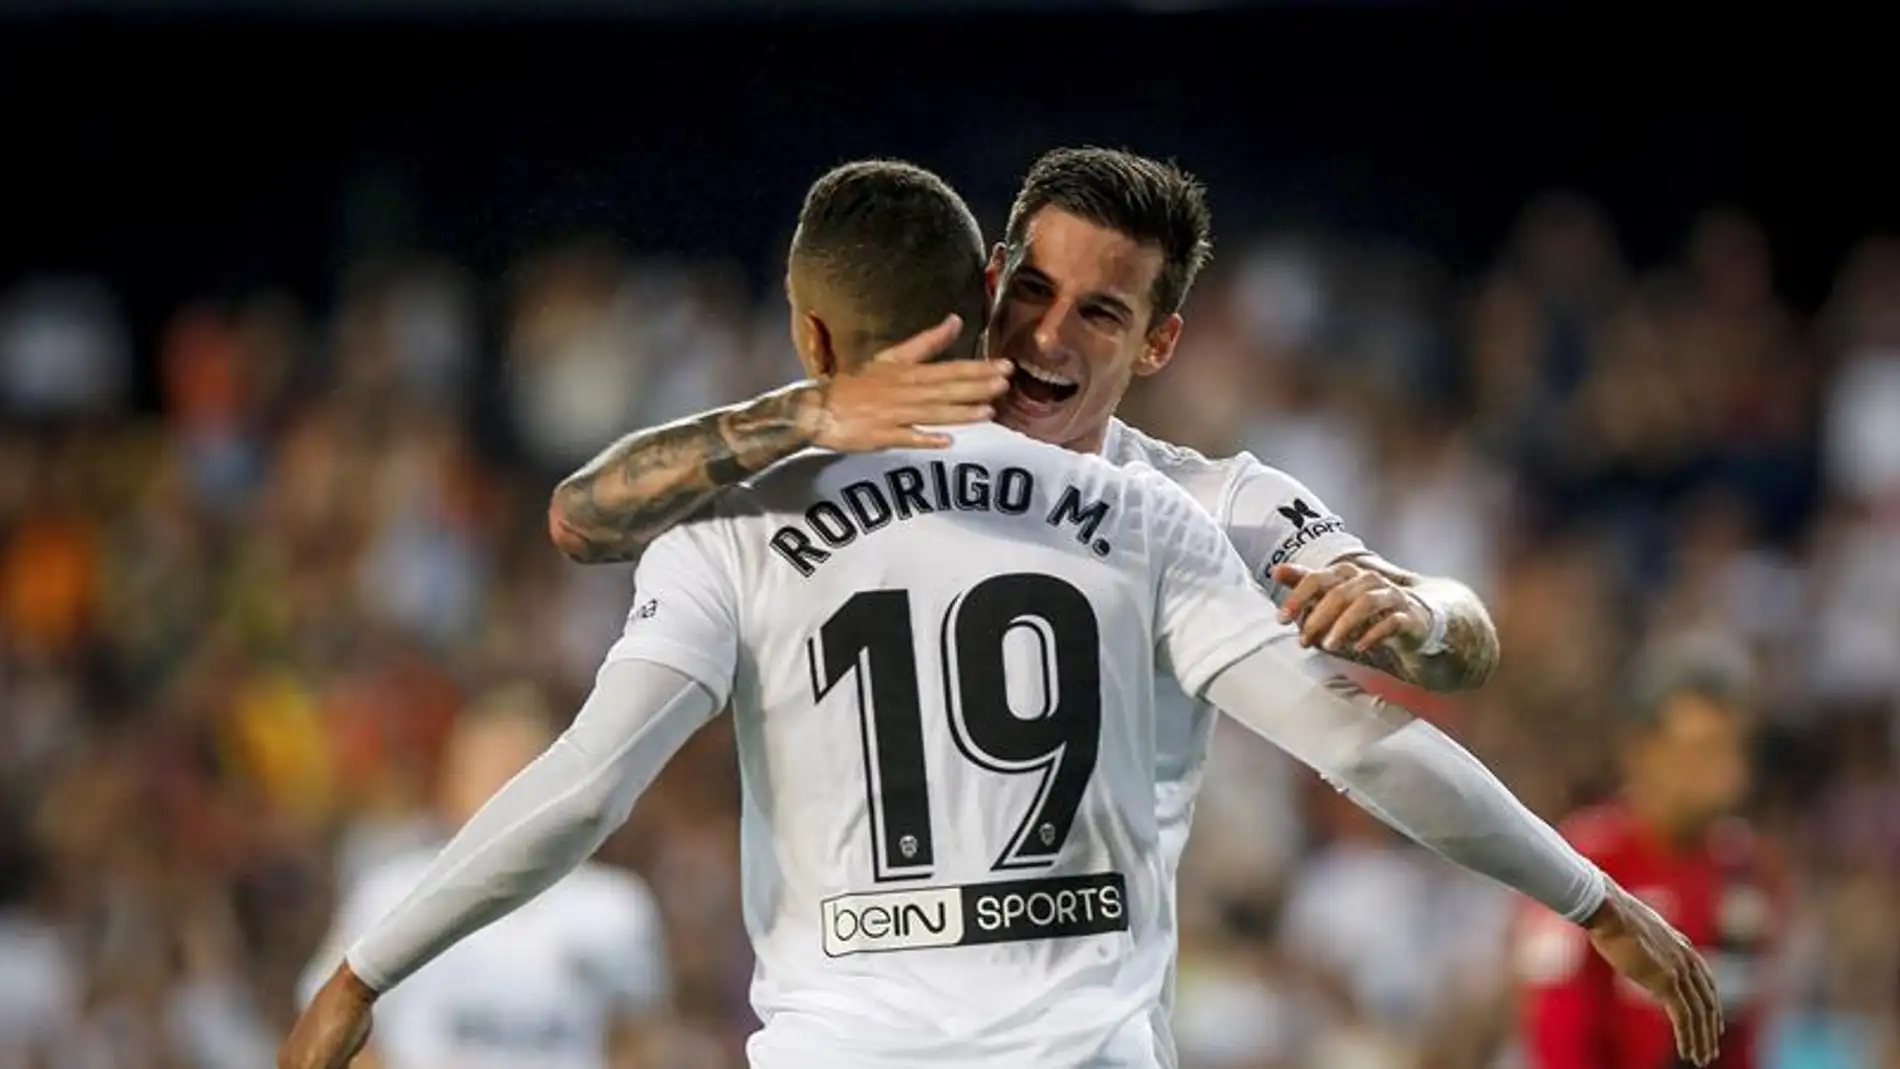 Los jugadores del Valencia CF Rodrigo y Santi Mina celebran el gol marcado ante el Bayer 04 Leverkusen.